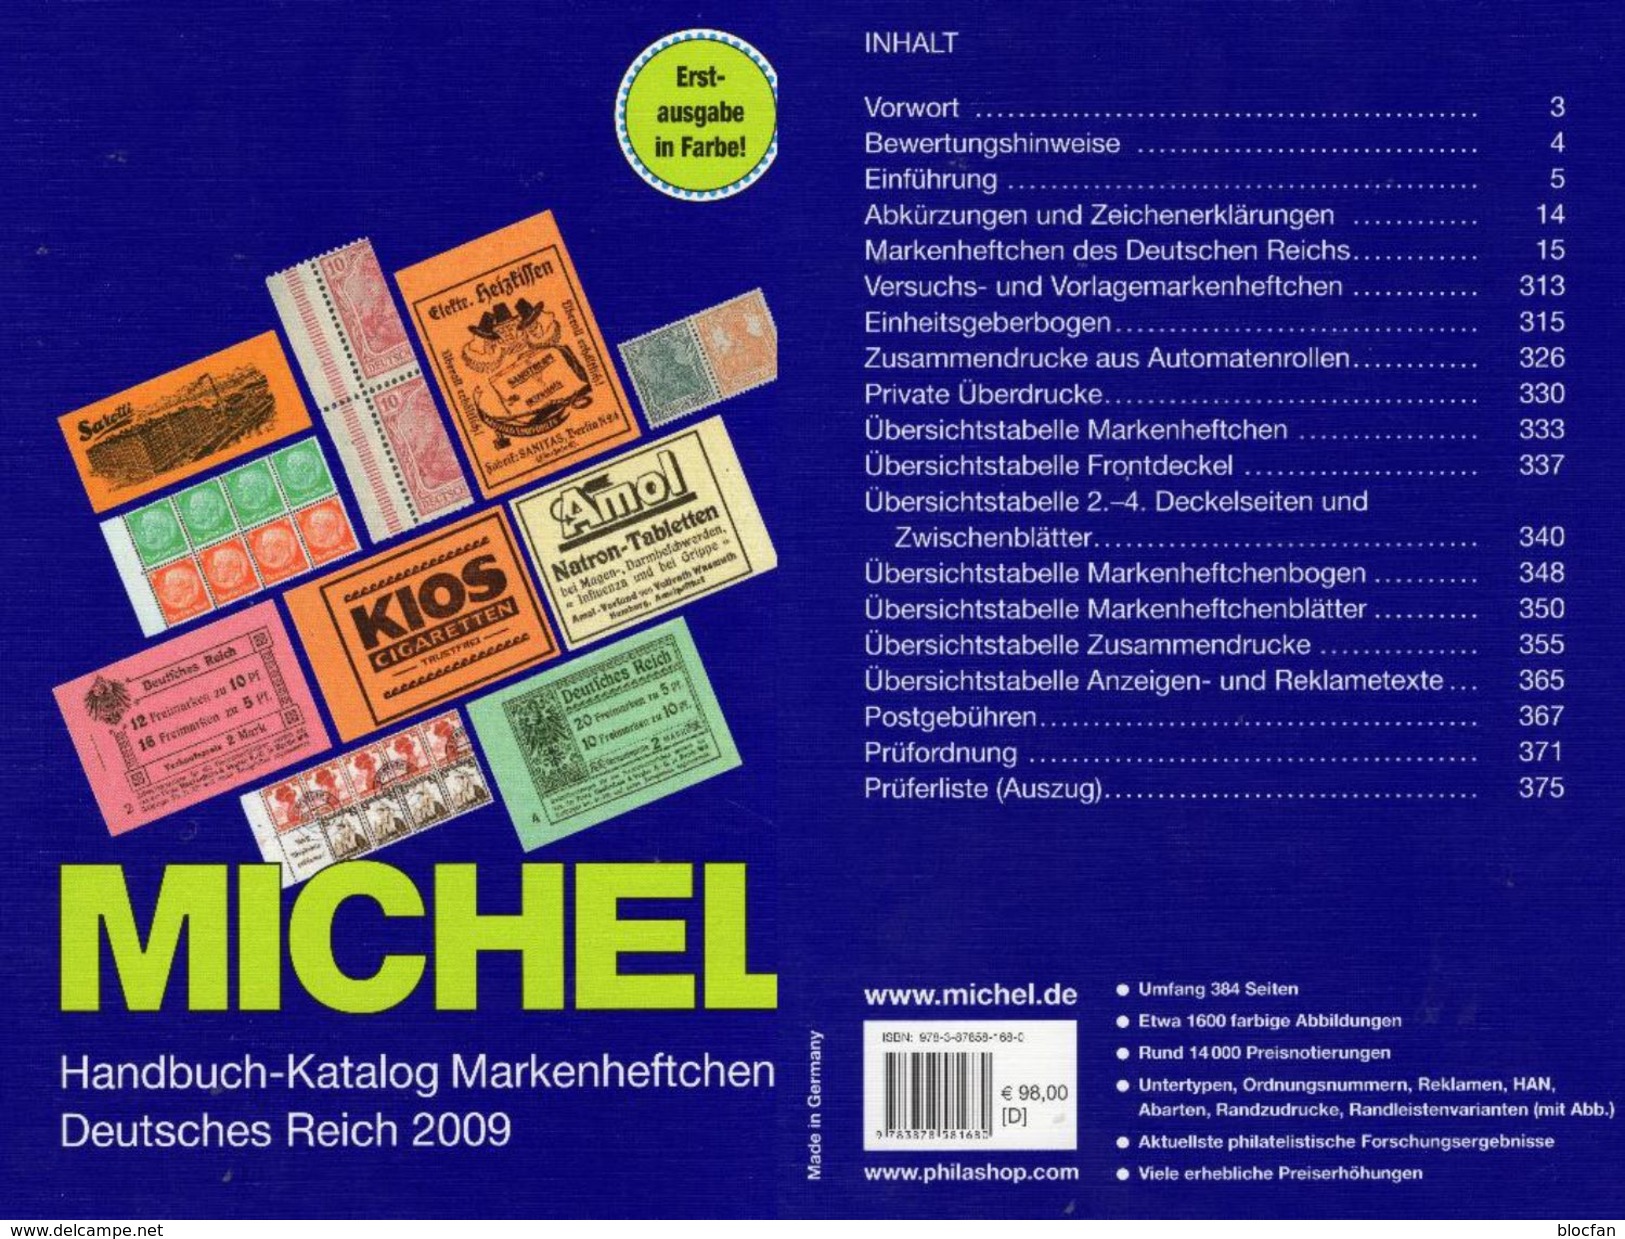 Deutsche Reich Markenheft MlCHEL Handbuch 2009 New 98€ Handbook With Special Carnets Booklets Catalogue Old Germany - Filatelie